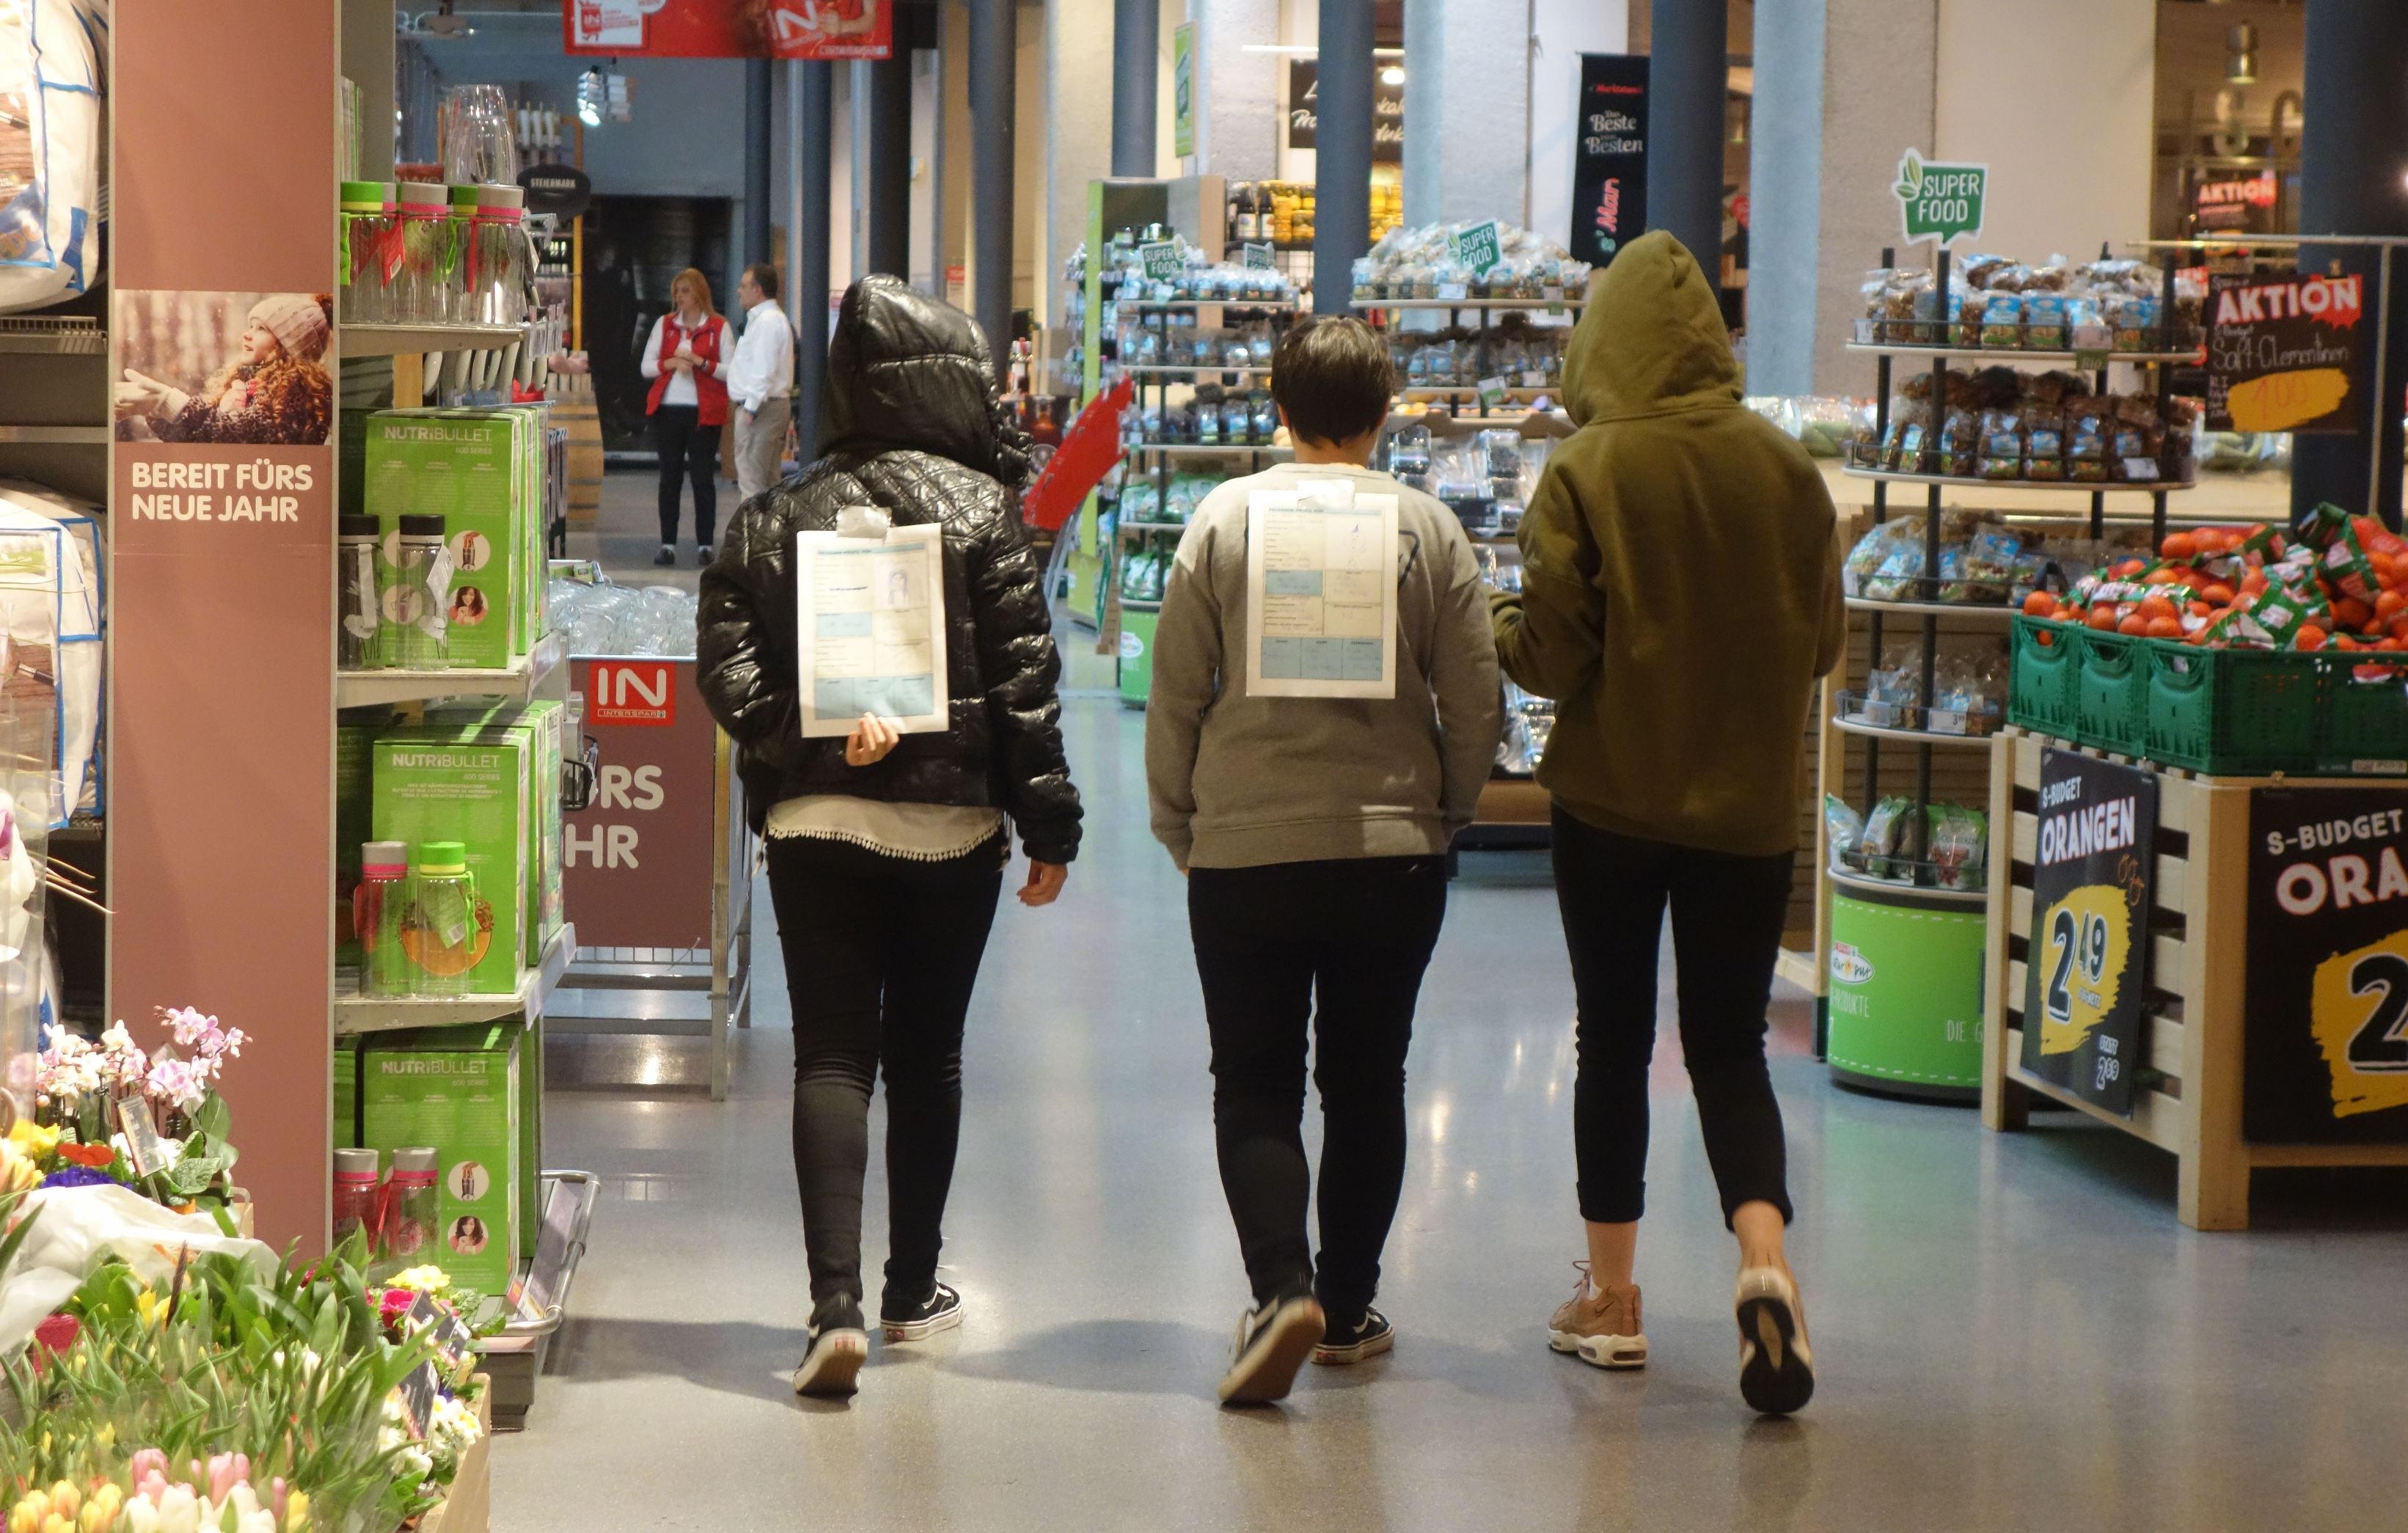 Jugendliche von hinten fotografiert - gehen den Gang eines Einkaufszentrums entlang